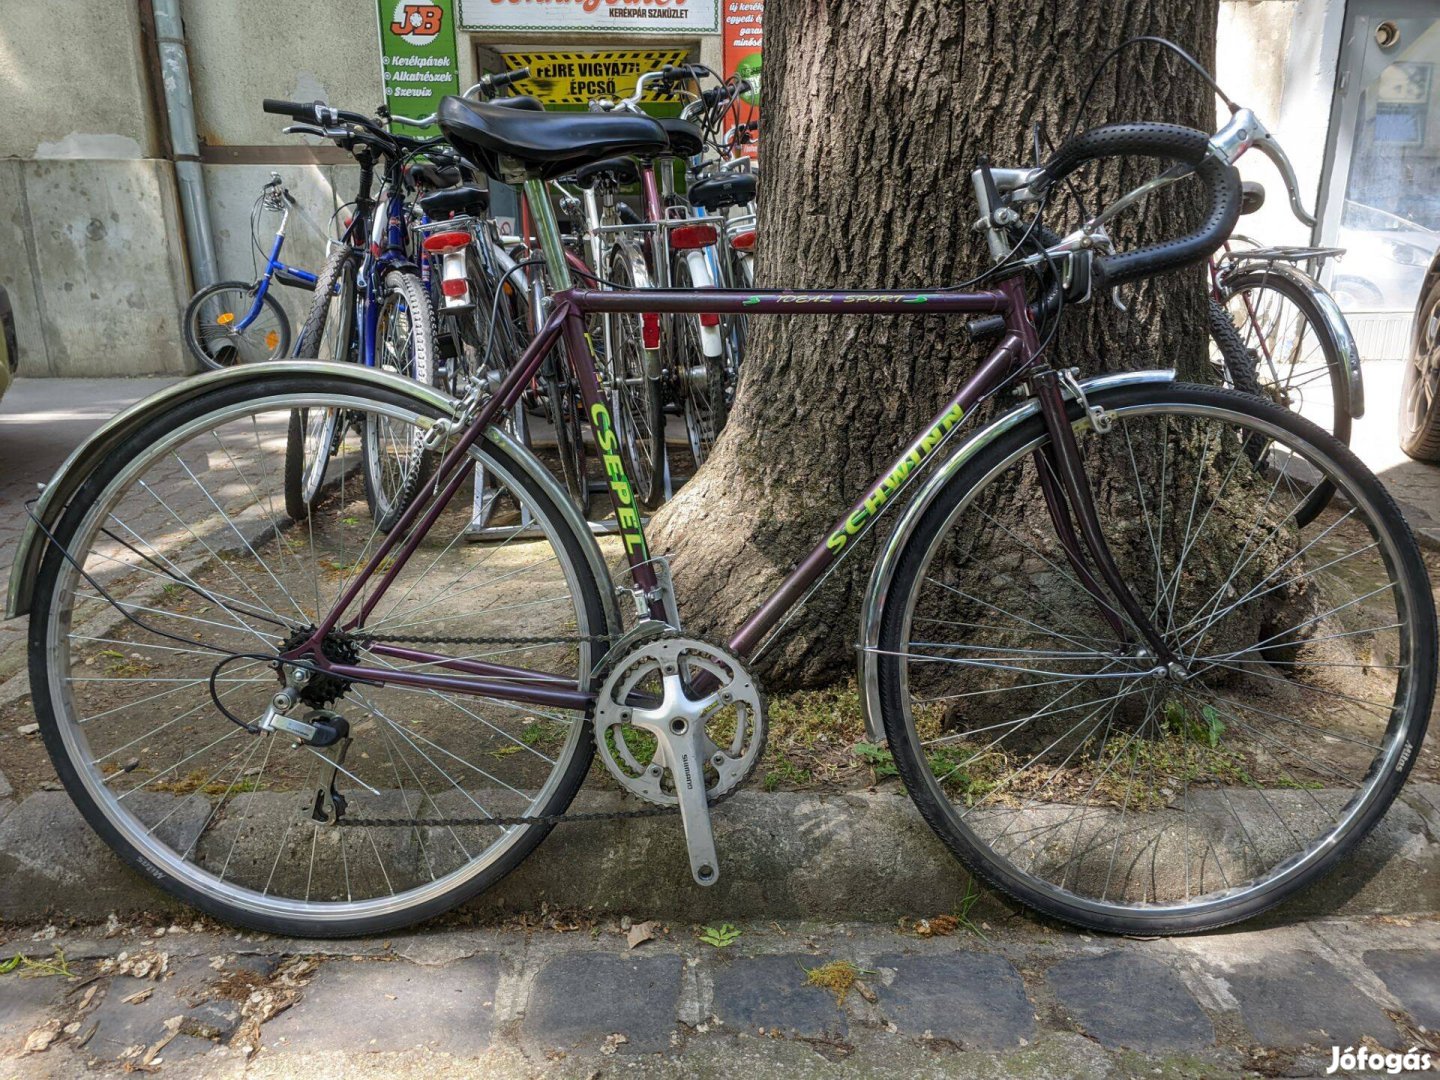 Használt országuti kerékpár csepel schwinn ideál sport 53cm